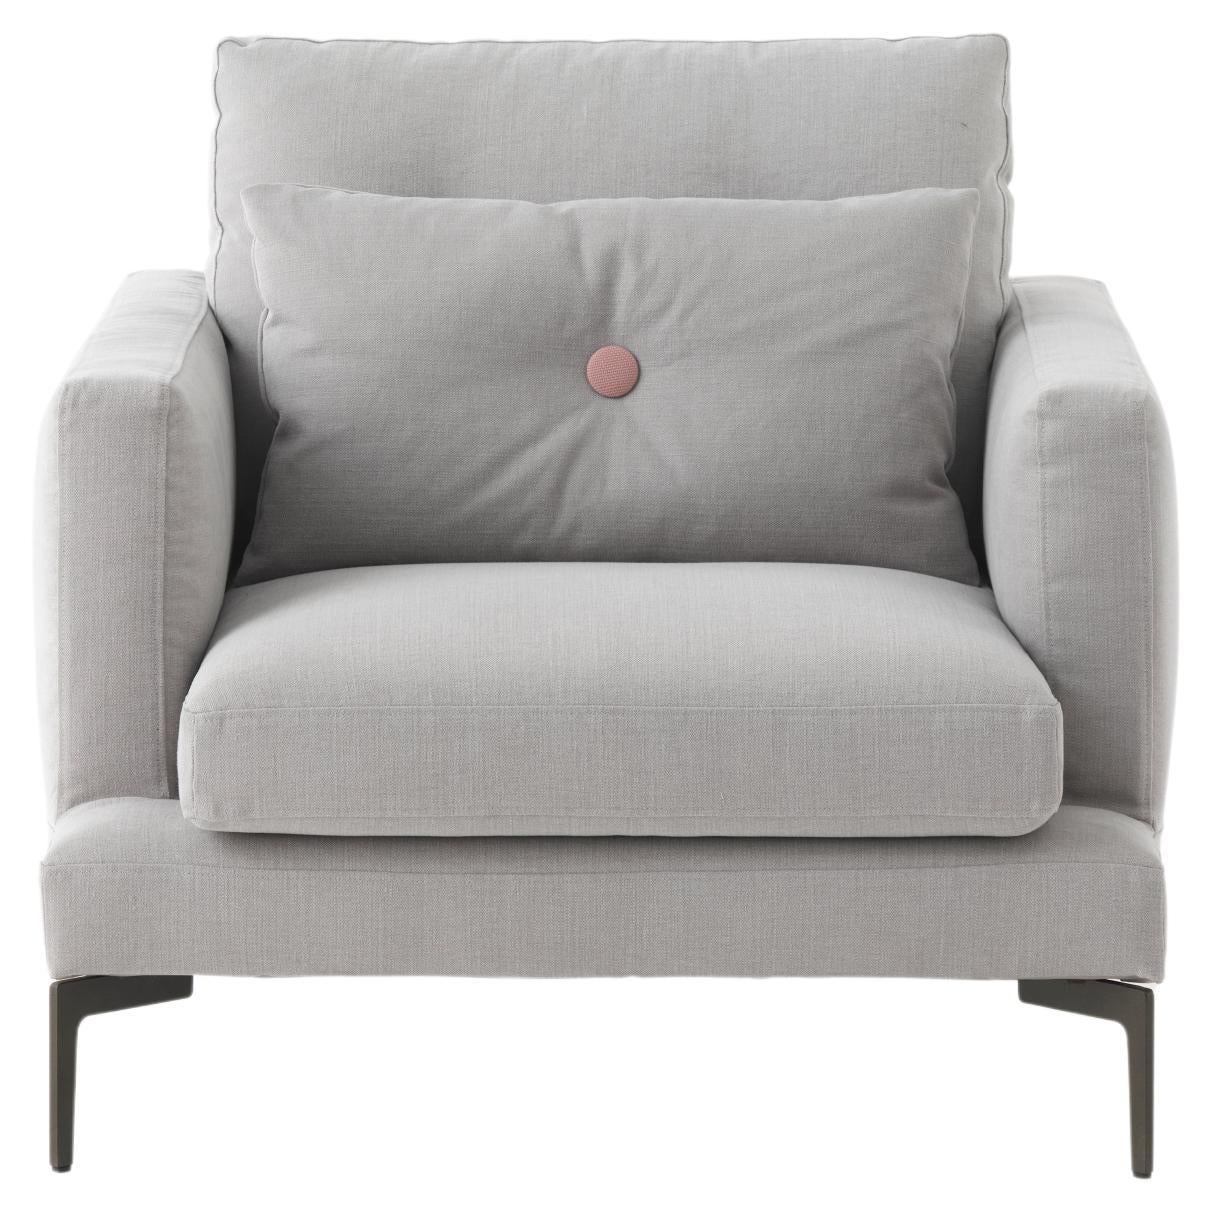 Grand fauteuil Essentiel avec coussin en tissu gris crème de Sergio Bicego